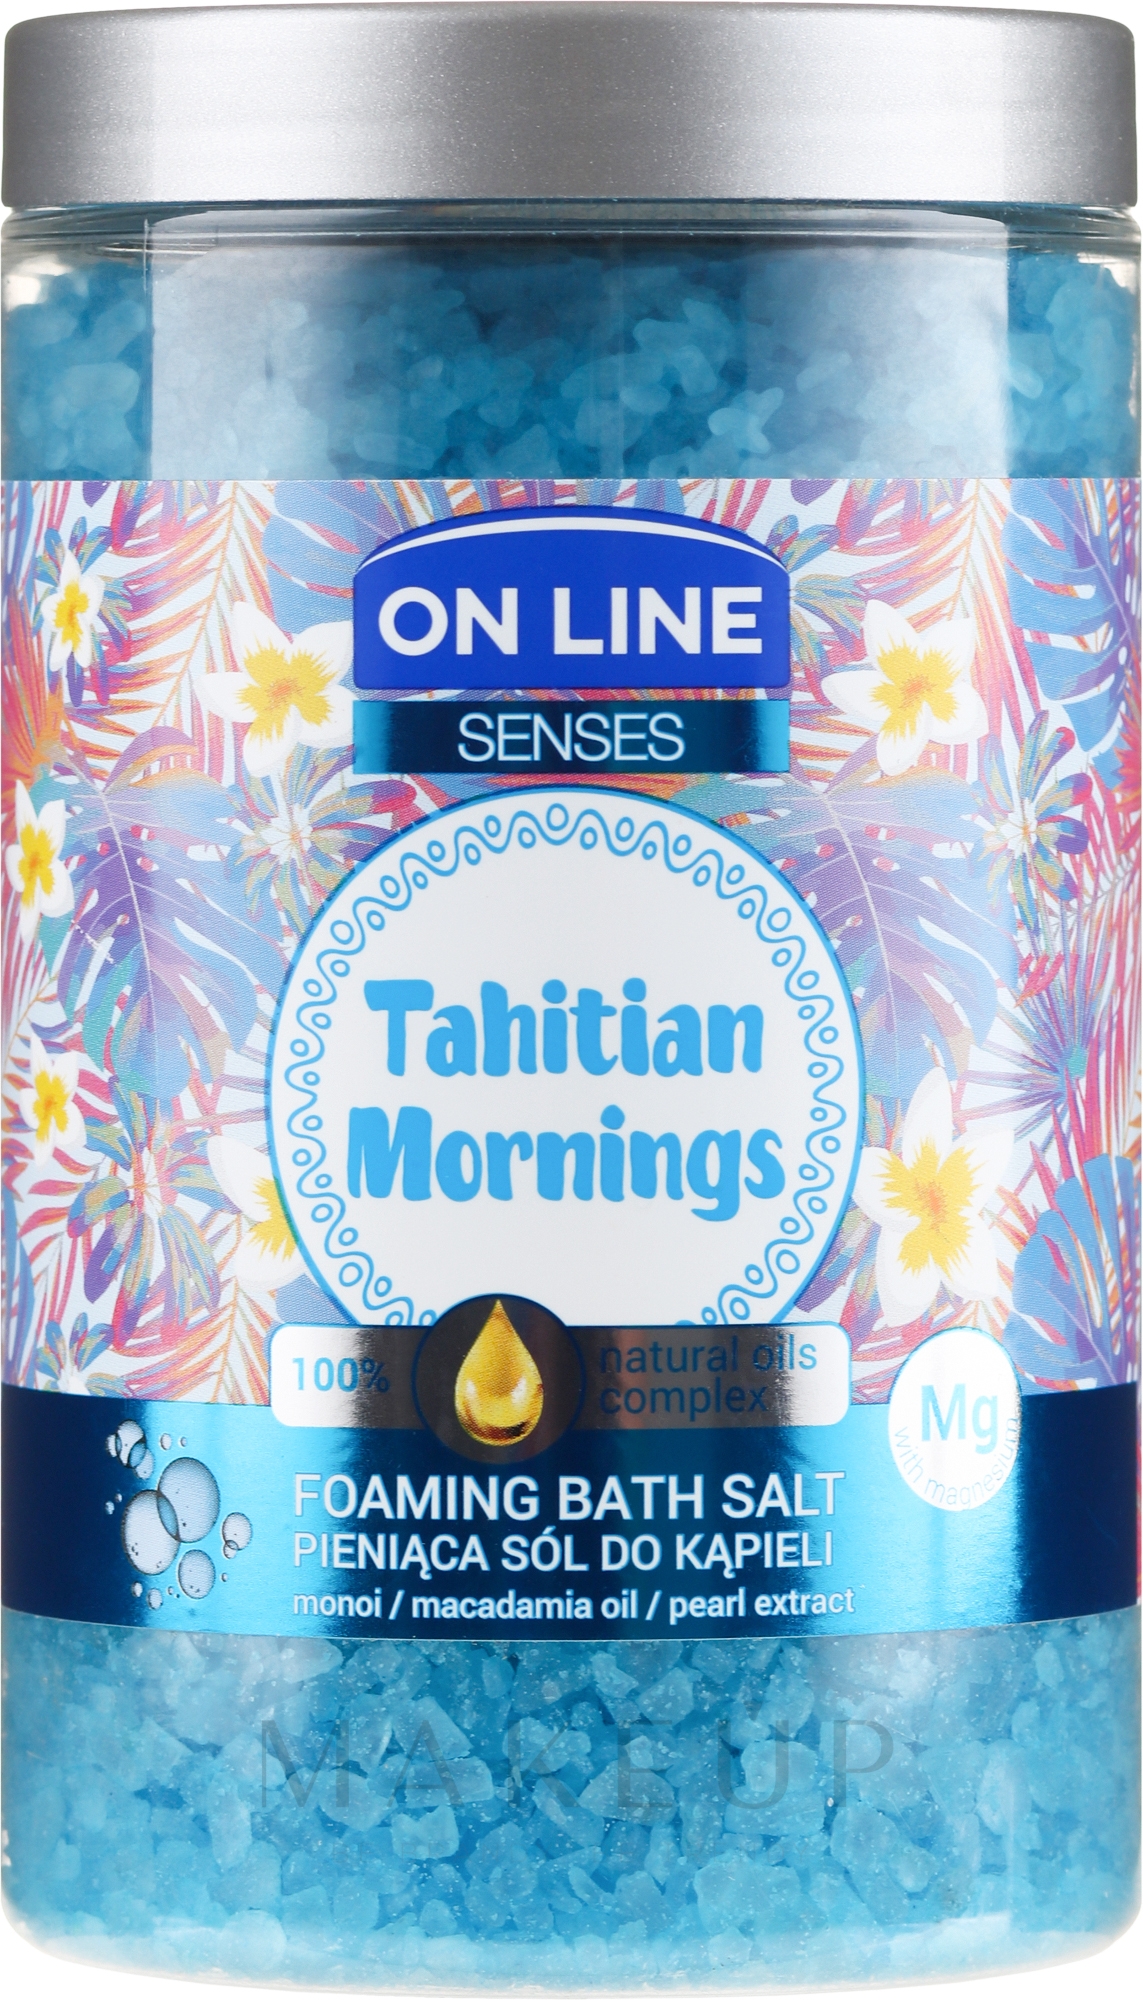 Schäumendes Badesalz mit Manoi, Macadamia und Perlenextrakt - On Line Senses Bath Salt Tahitian Mornings — Bild 480 g